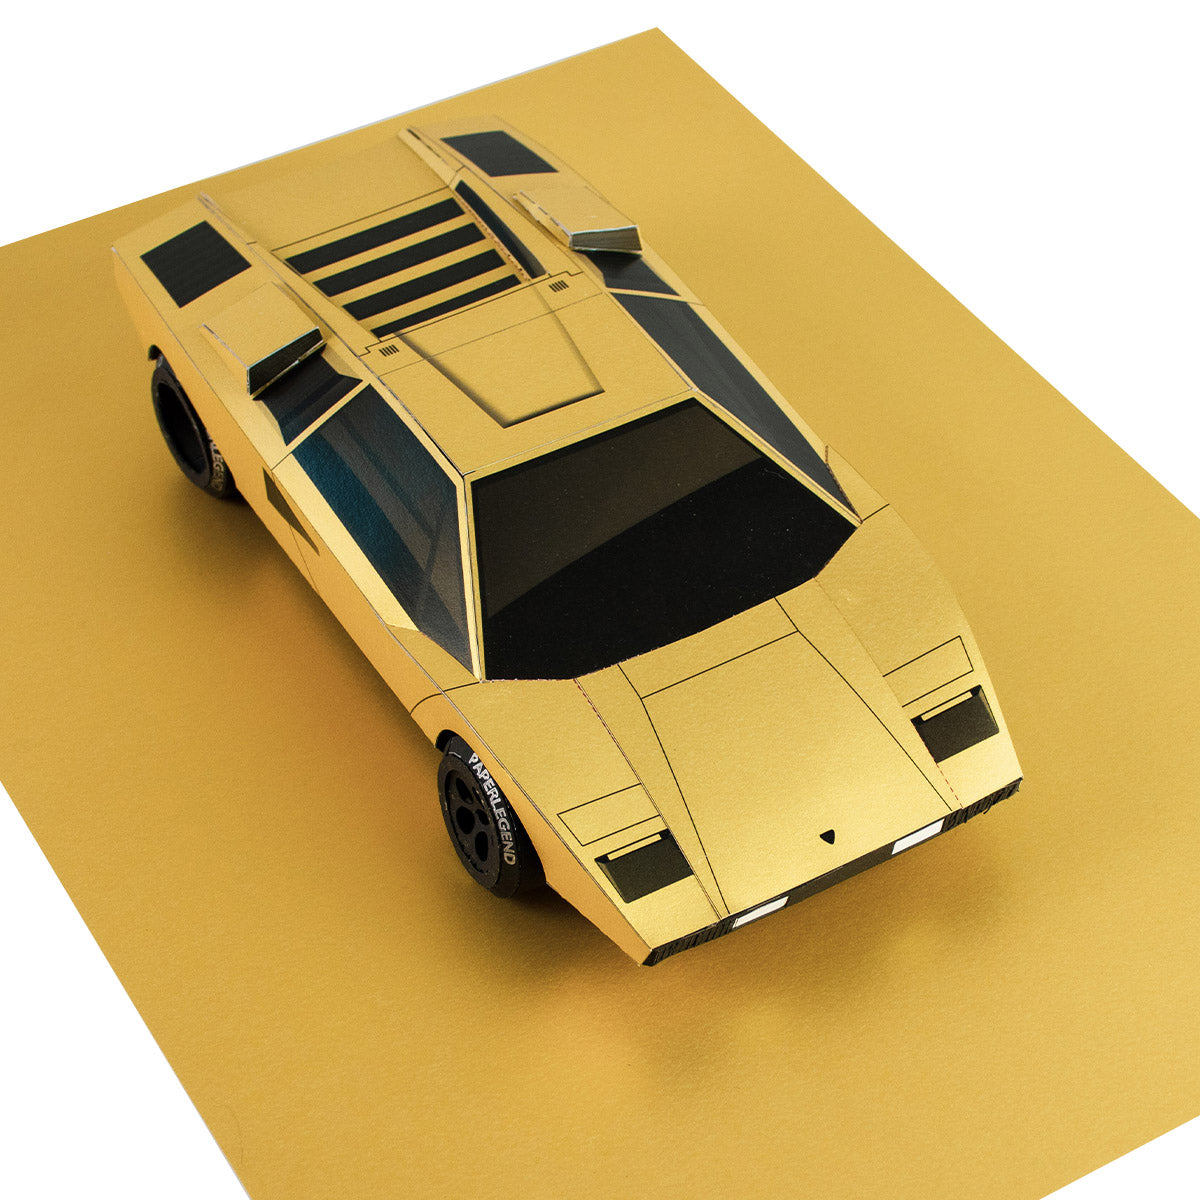 The Coun - 1:18 - Printable Papercraft Car Sculpture Kit - Top View